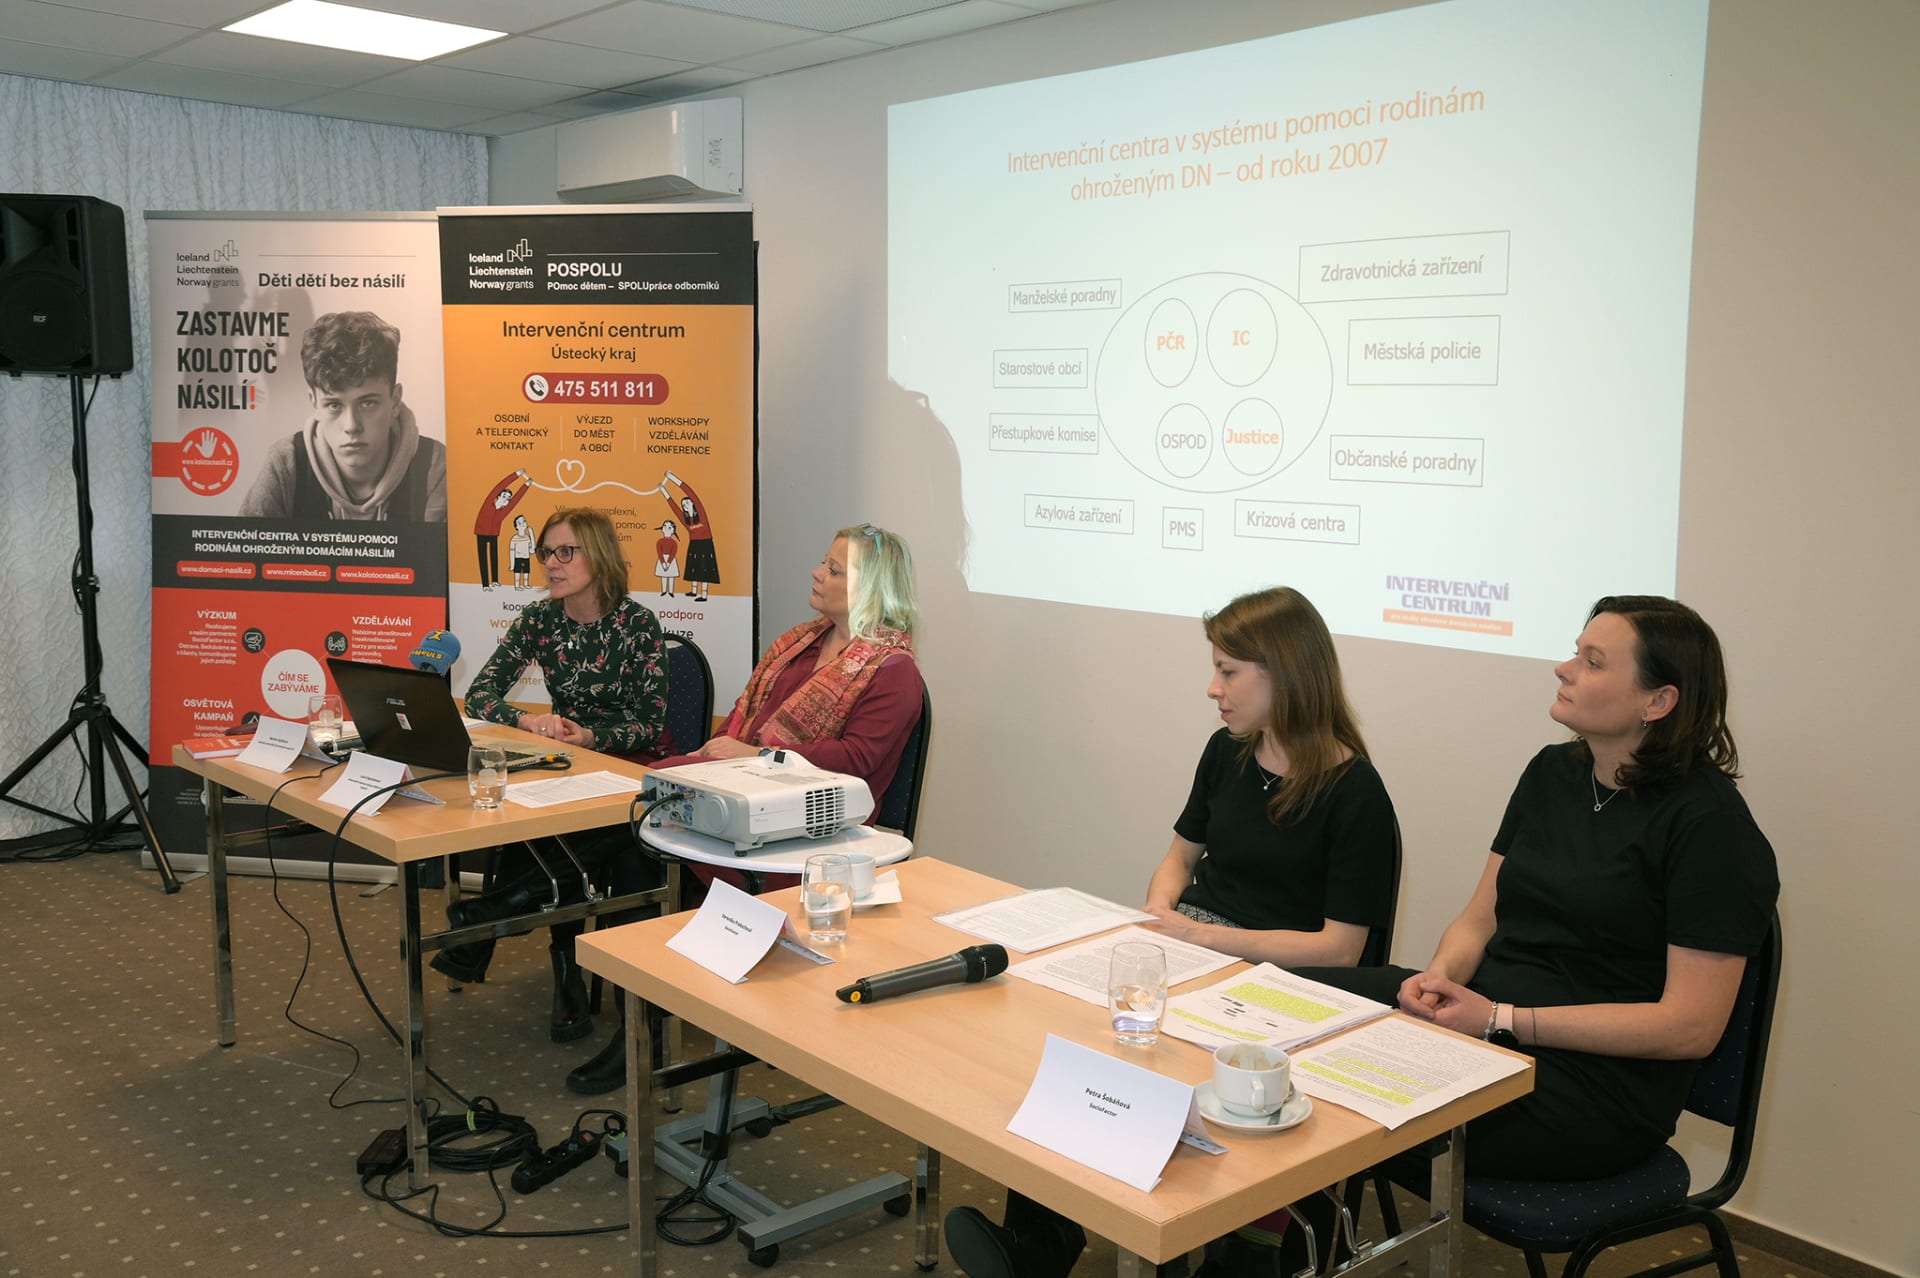 Odborníci na tiskové konferenci představili výsledky unikátního průzkumu, který se zabýval transgeneračním přenosem domácího násilí v Česku.